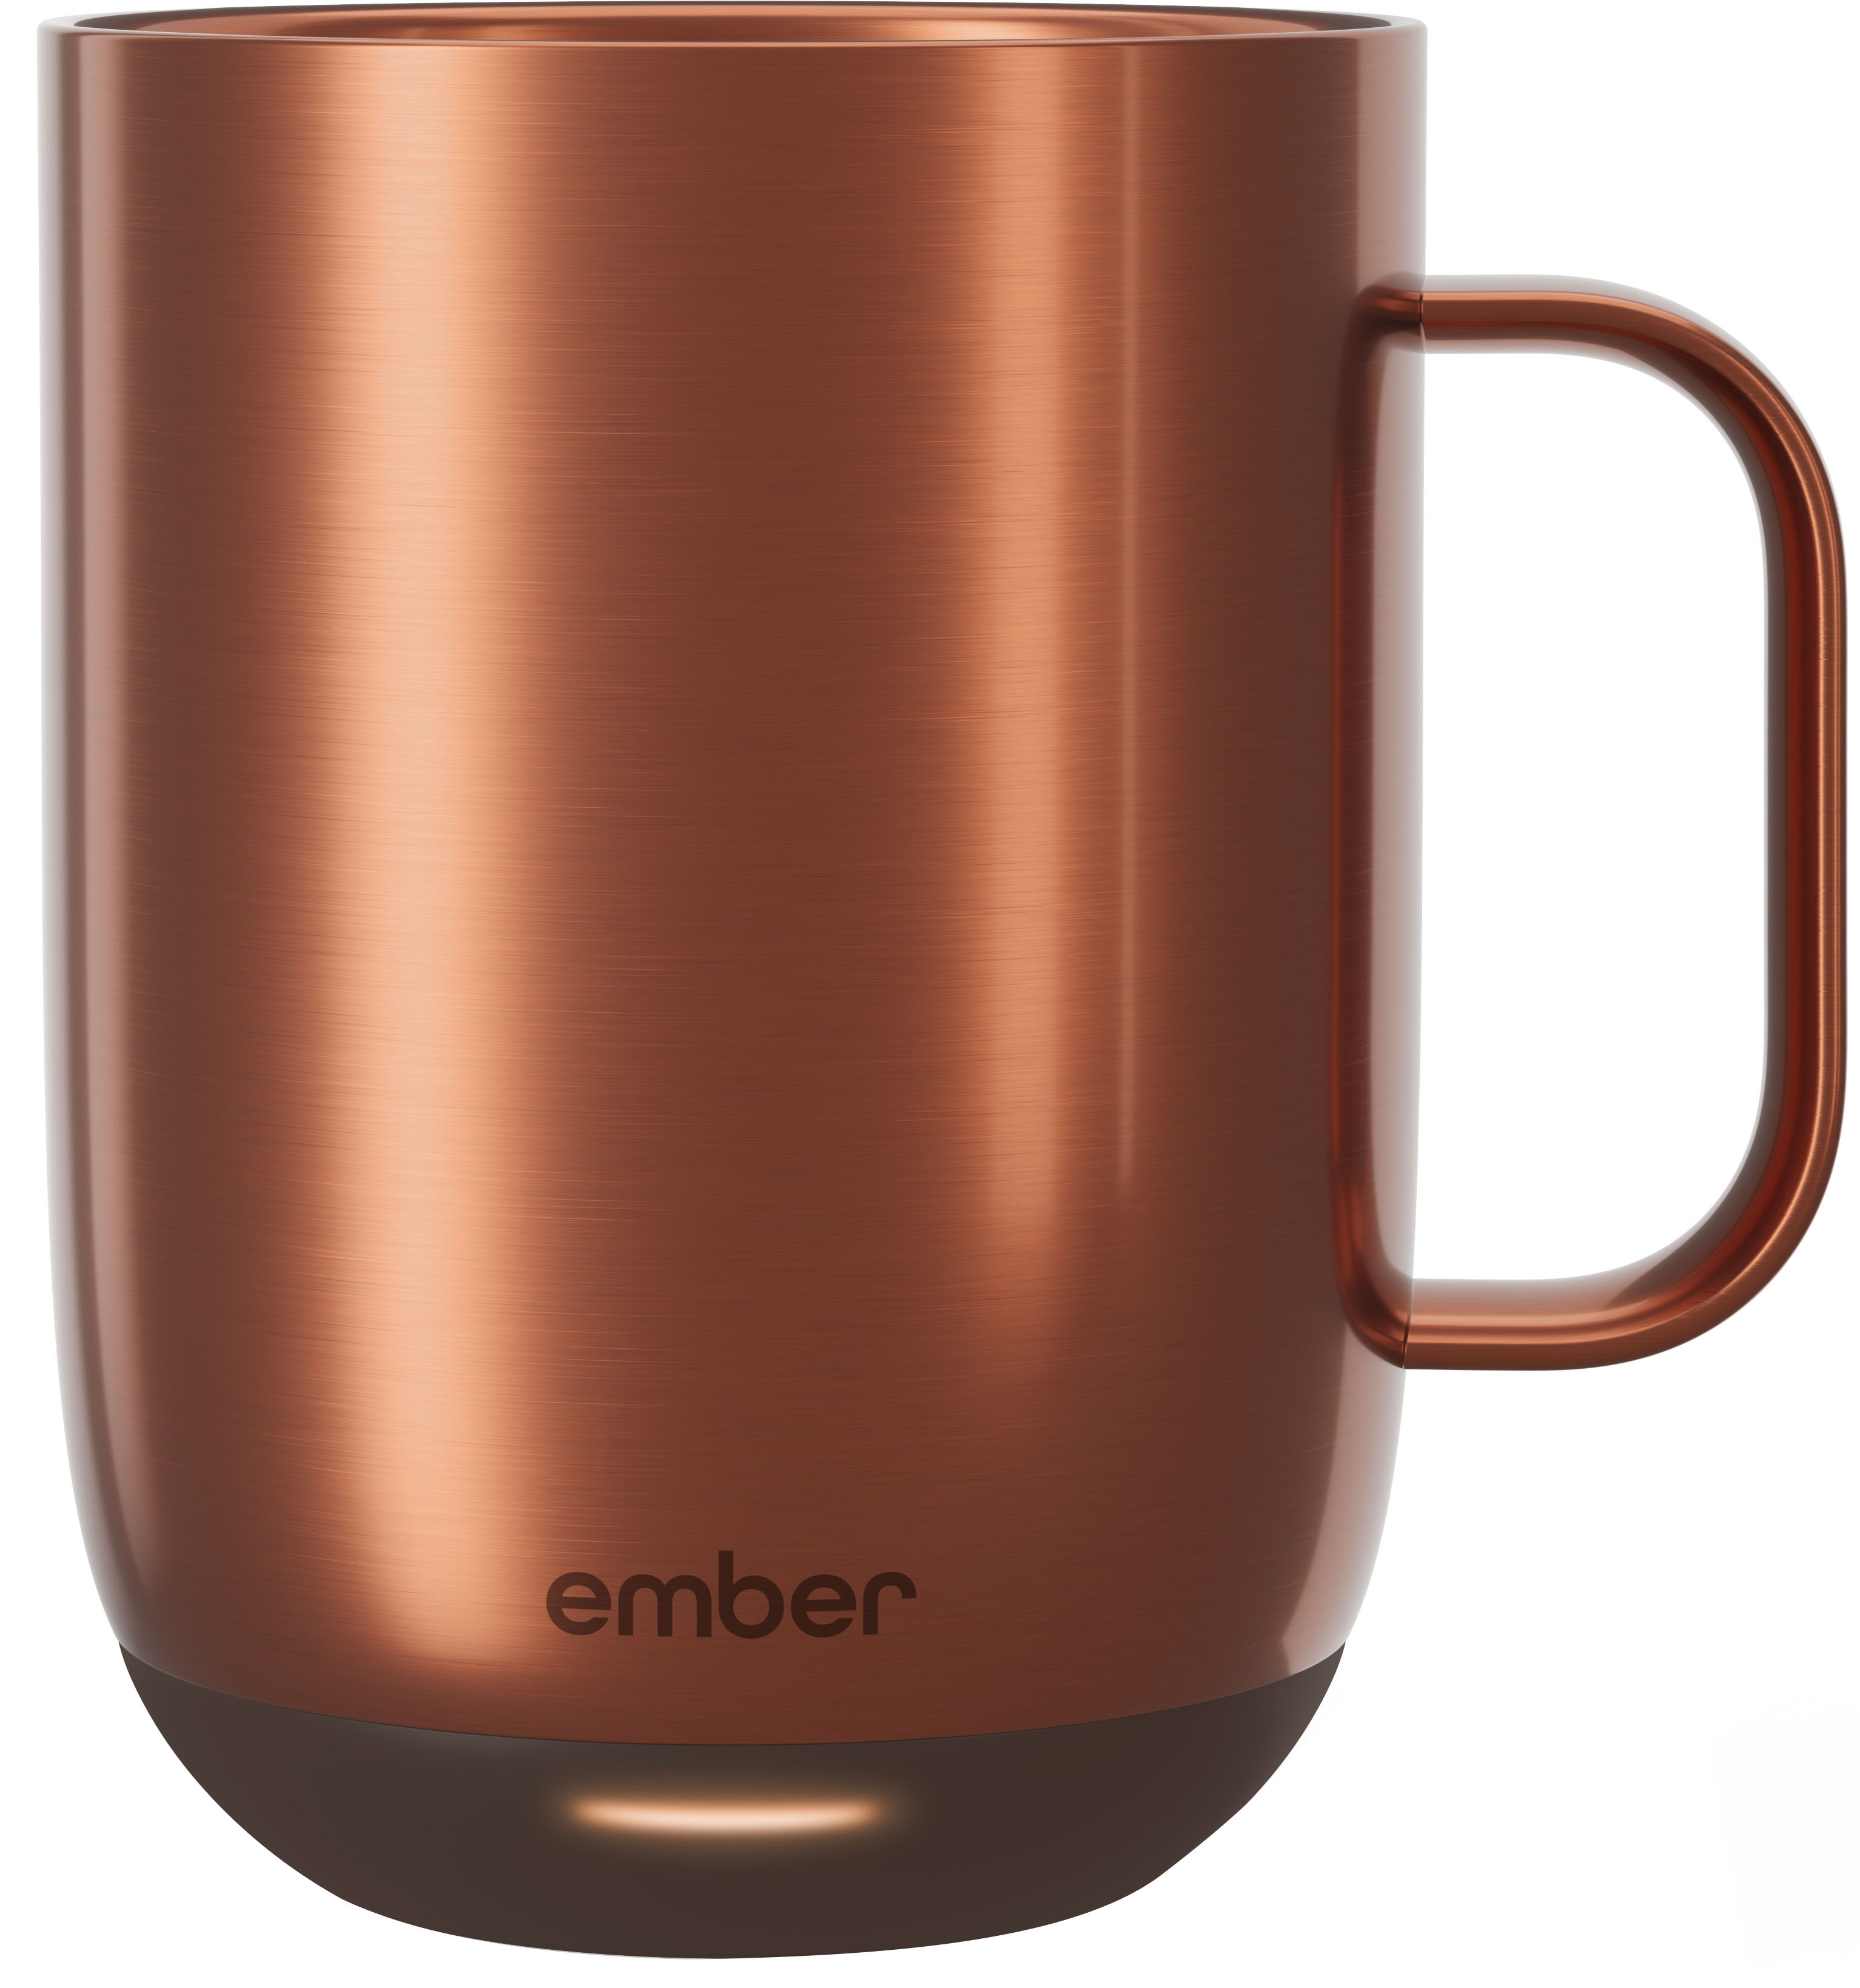 Ember Mug 2 14 oz. Temperature Control Smart Mug